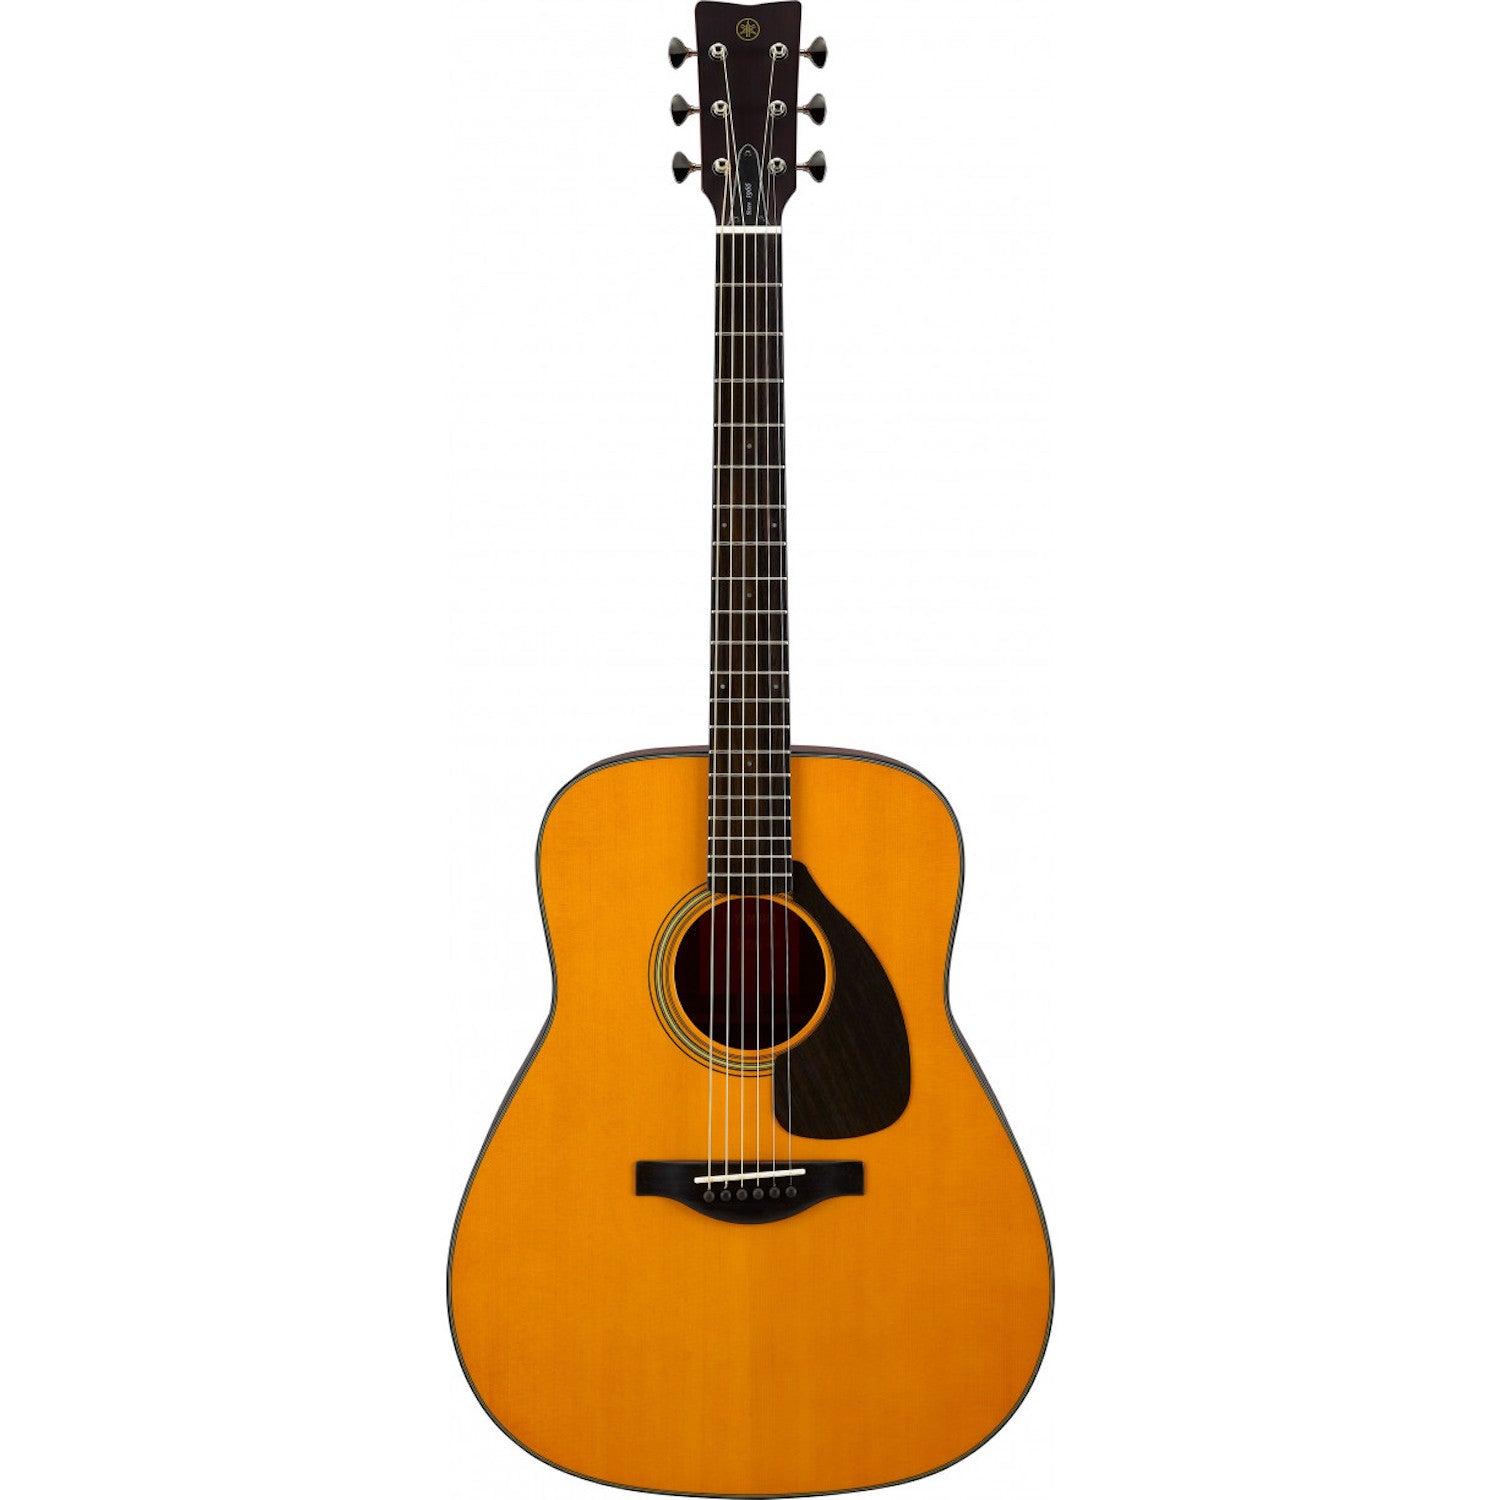 Yamaha FG5-VN Red Label Acoustic Guitar-Vintage Natural